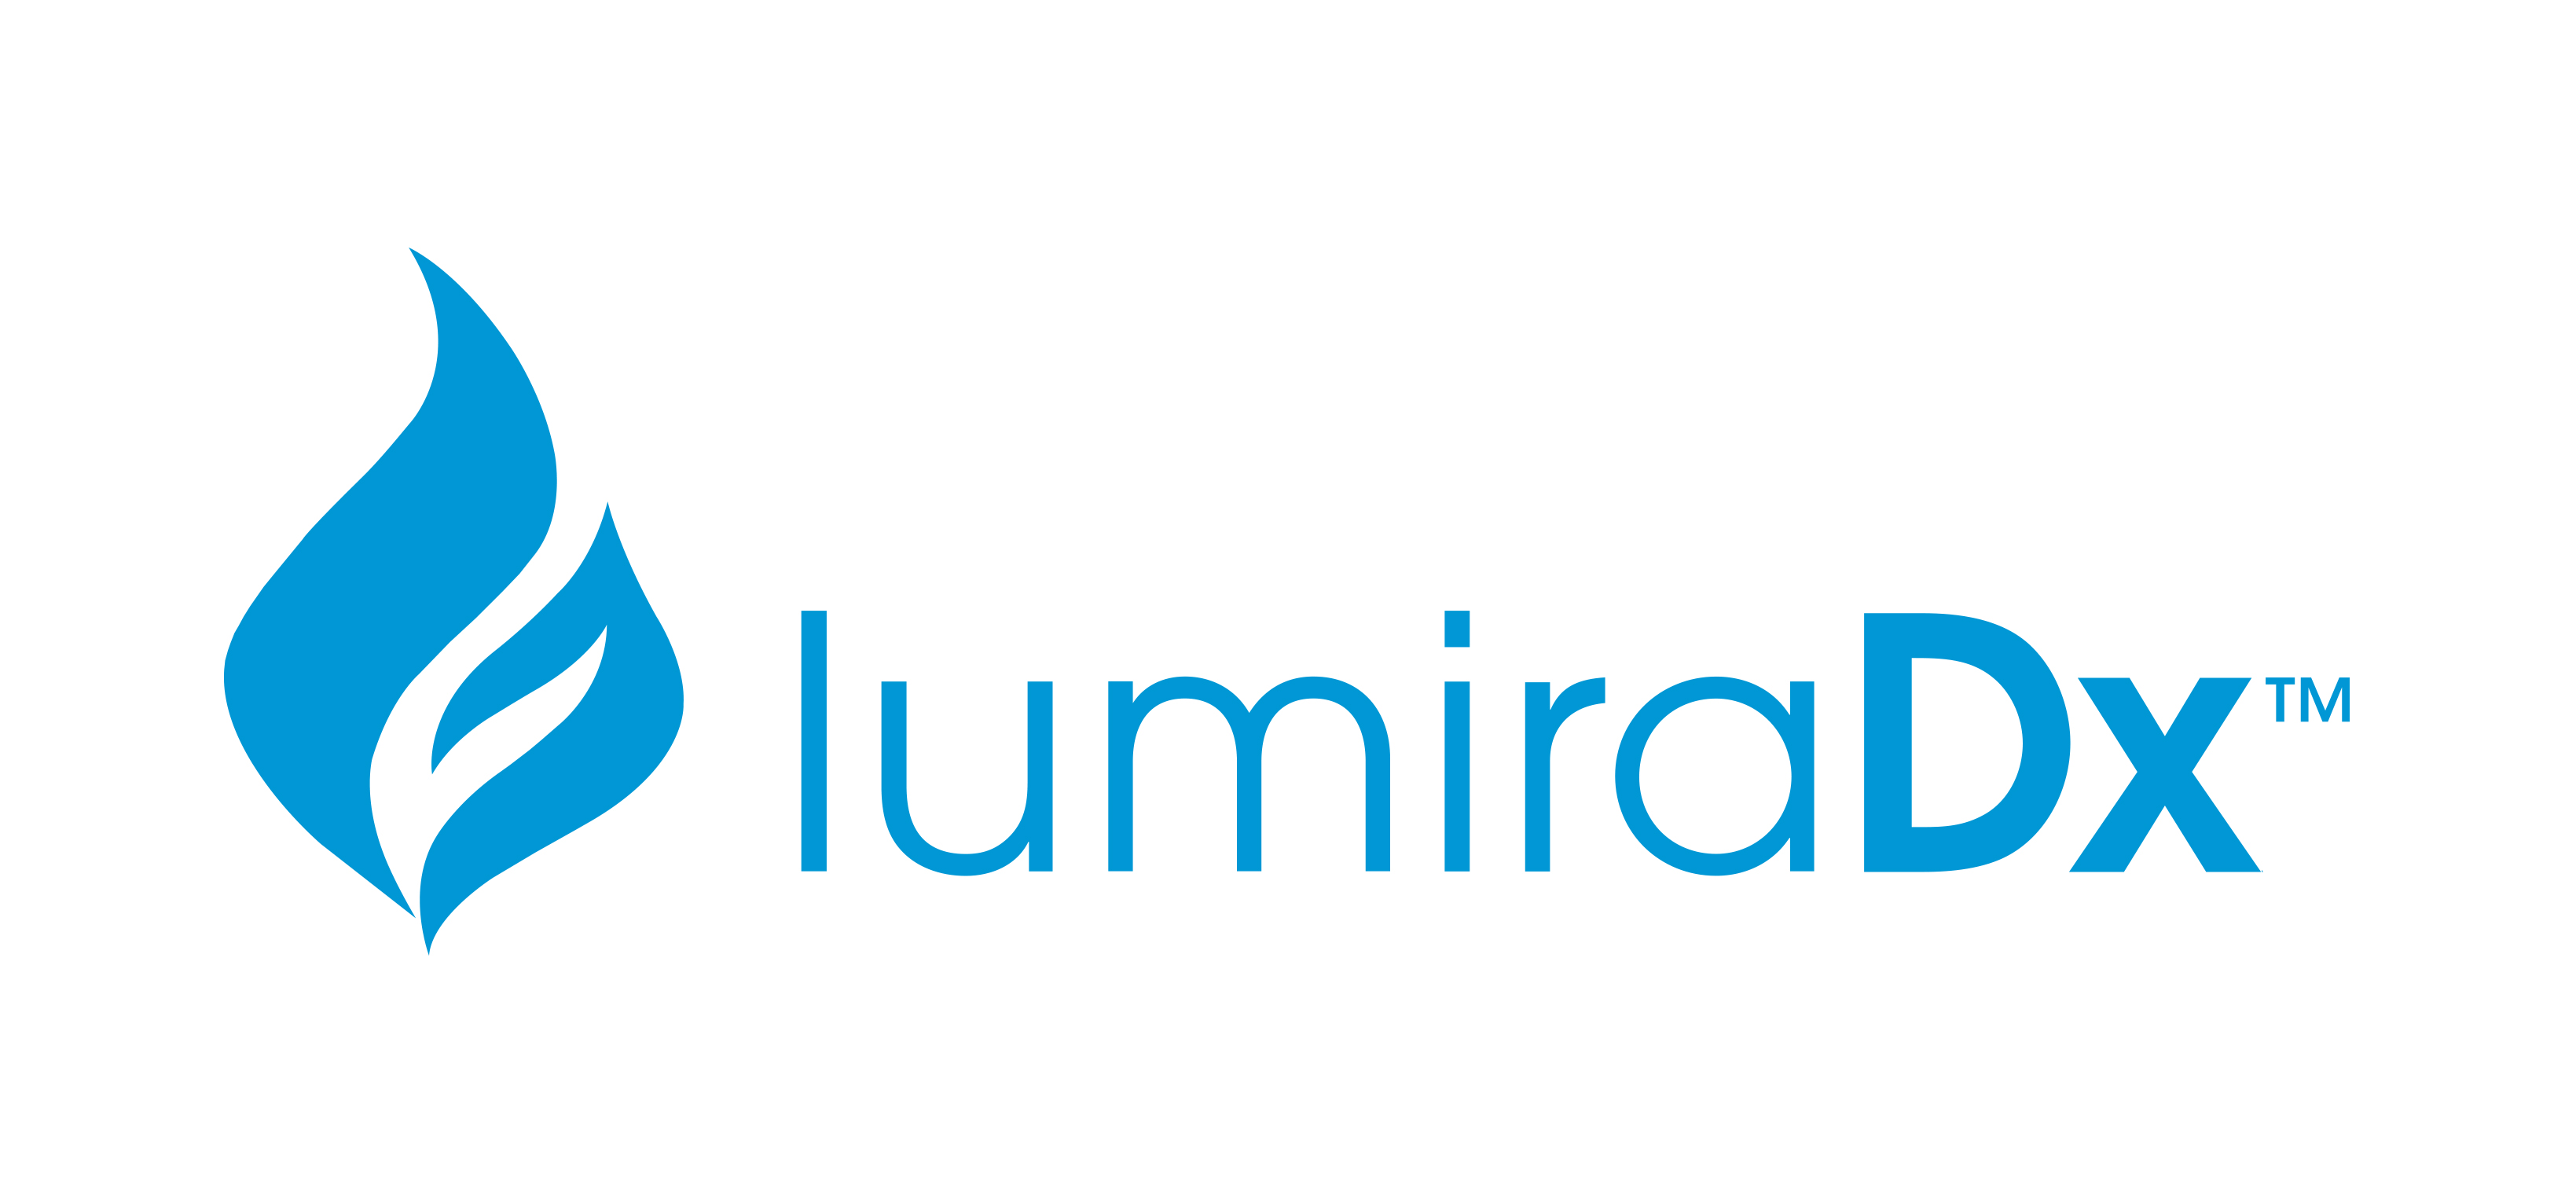 Visit www.lumiradx.com